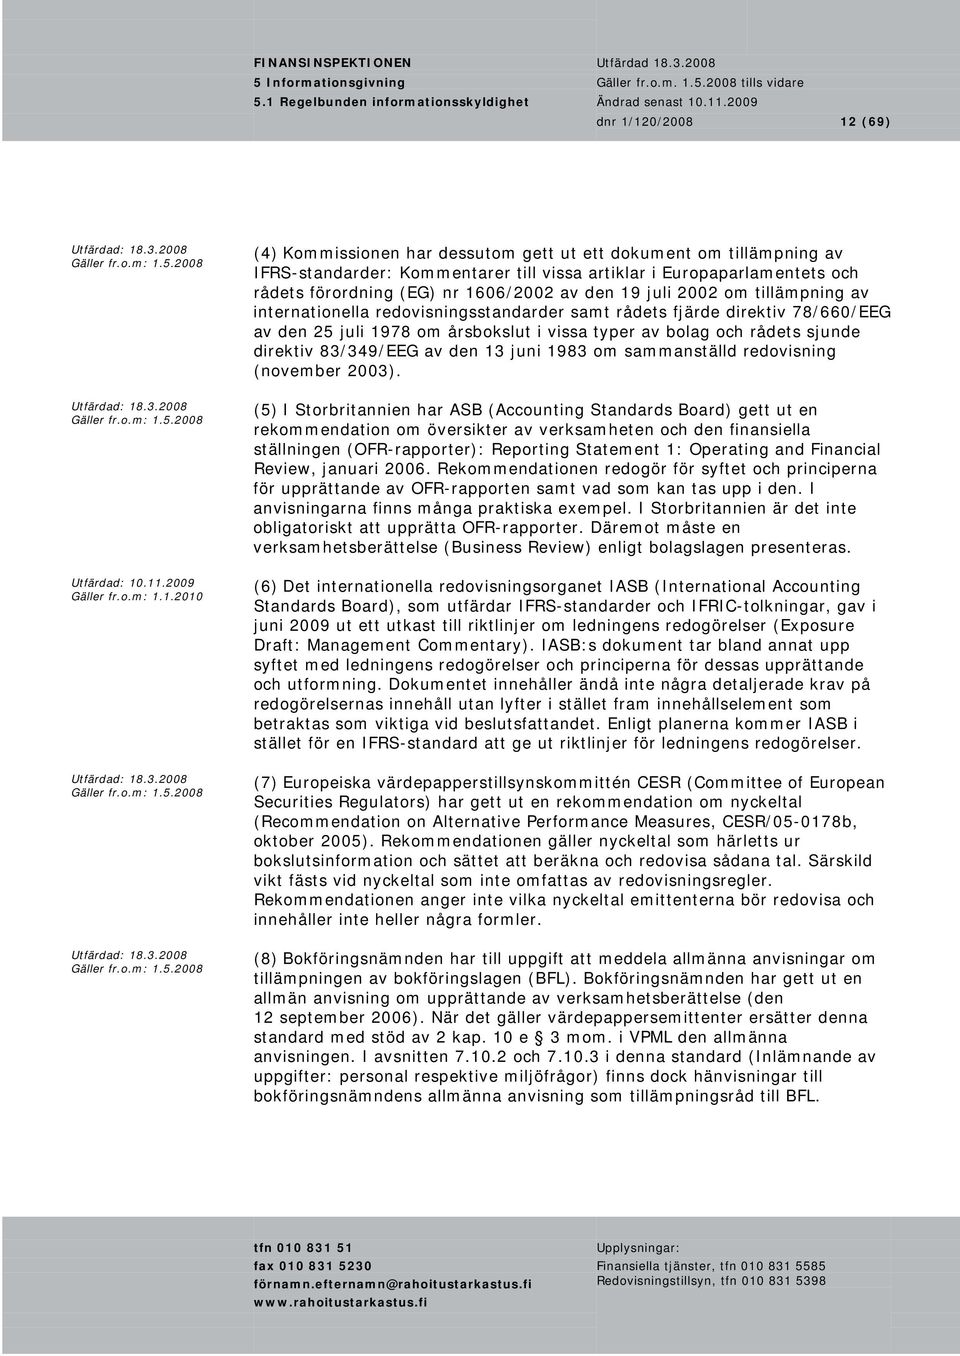 sjunde direktiv 83/349/EEG av den 13 juni 1983 om sammanställd redovisning (november 2003).